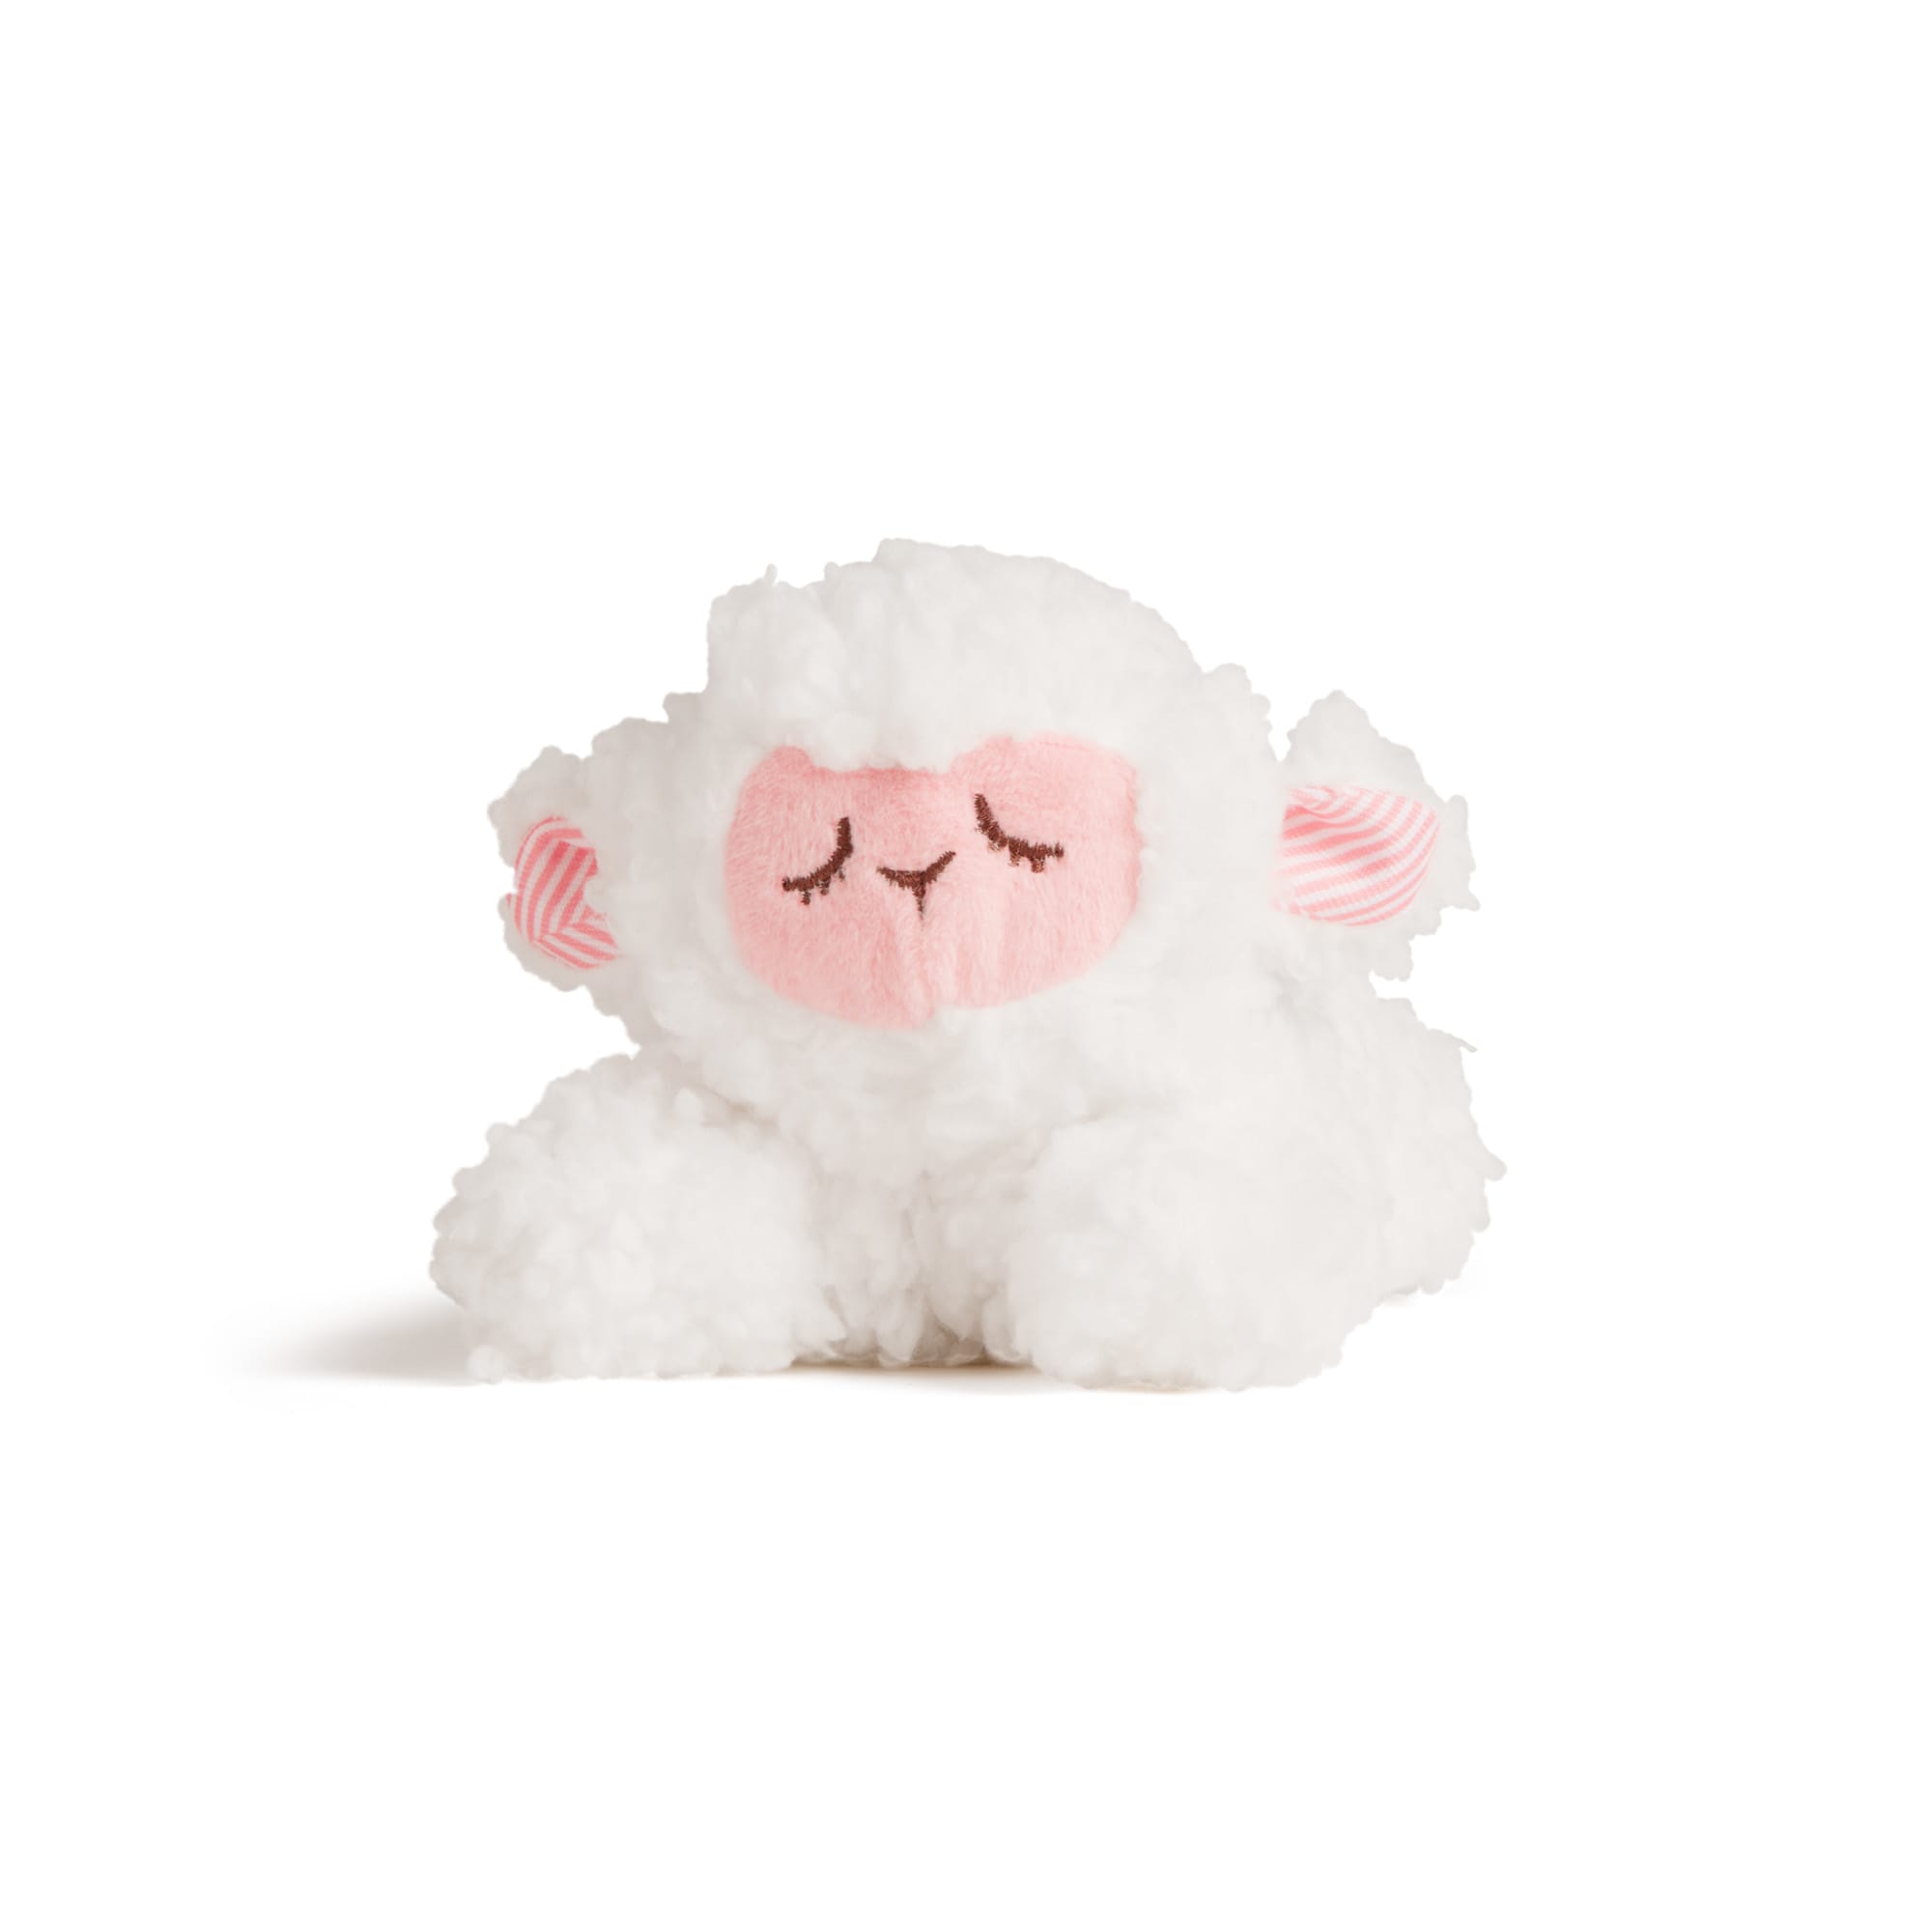 small stuffed lamb toy